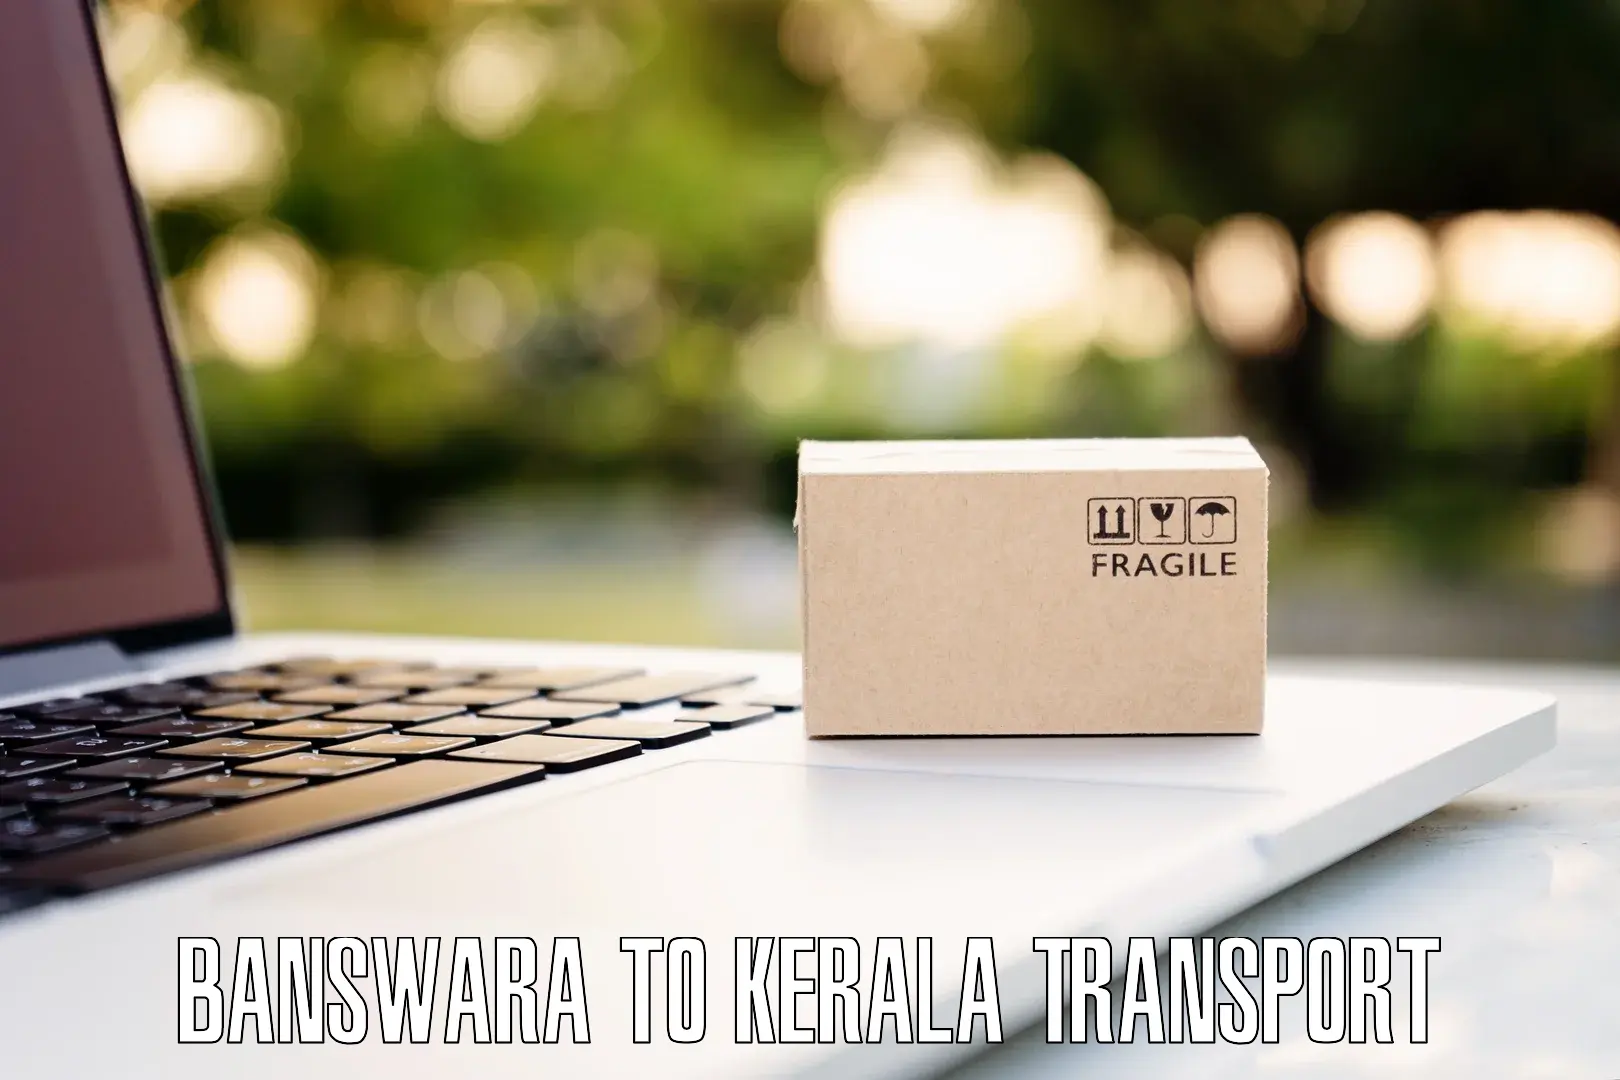 Online transport booking Banswara to Koothattukulam